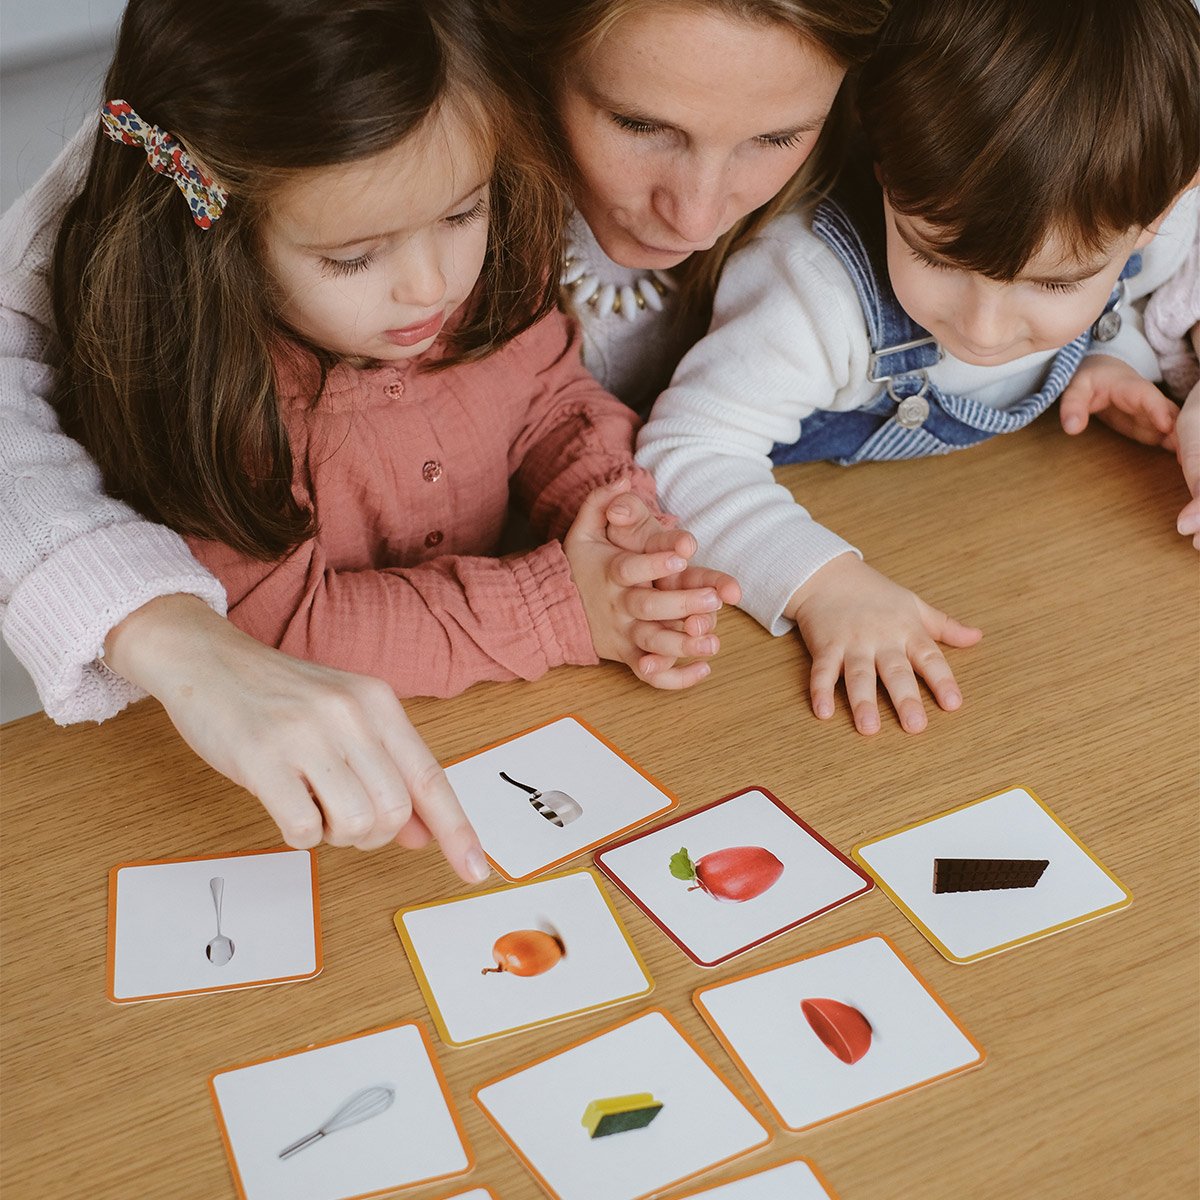 96 cartes de loto - Jeux éducatifs - Jouets enfant - Enfants, jouets et jeux